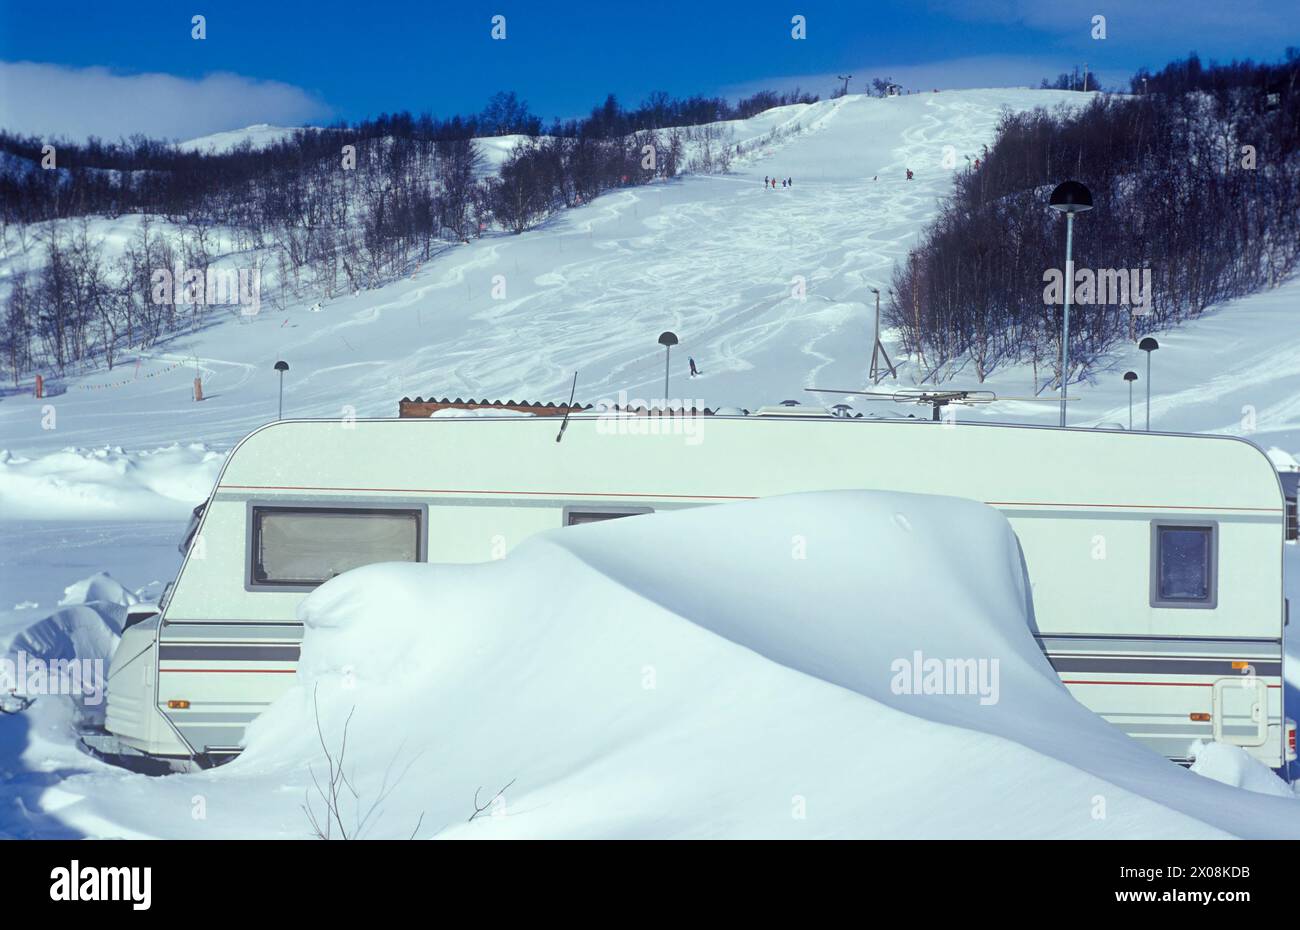 Caravan camping at ski resort Stock Photo